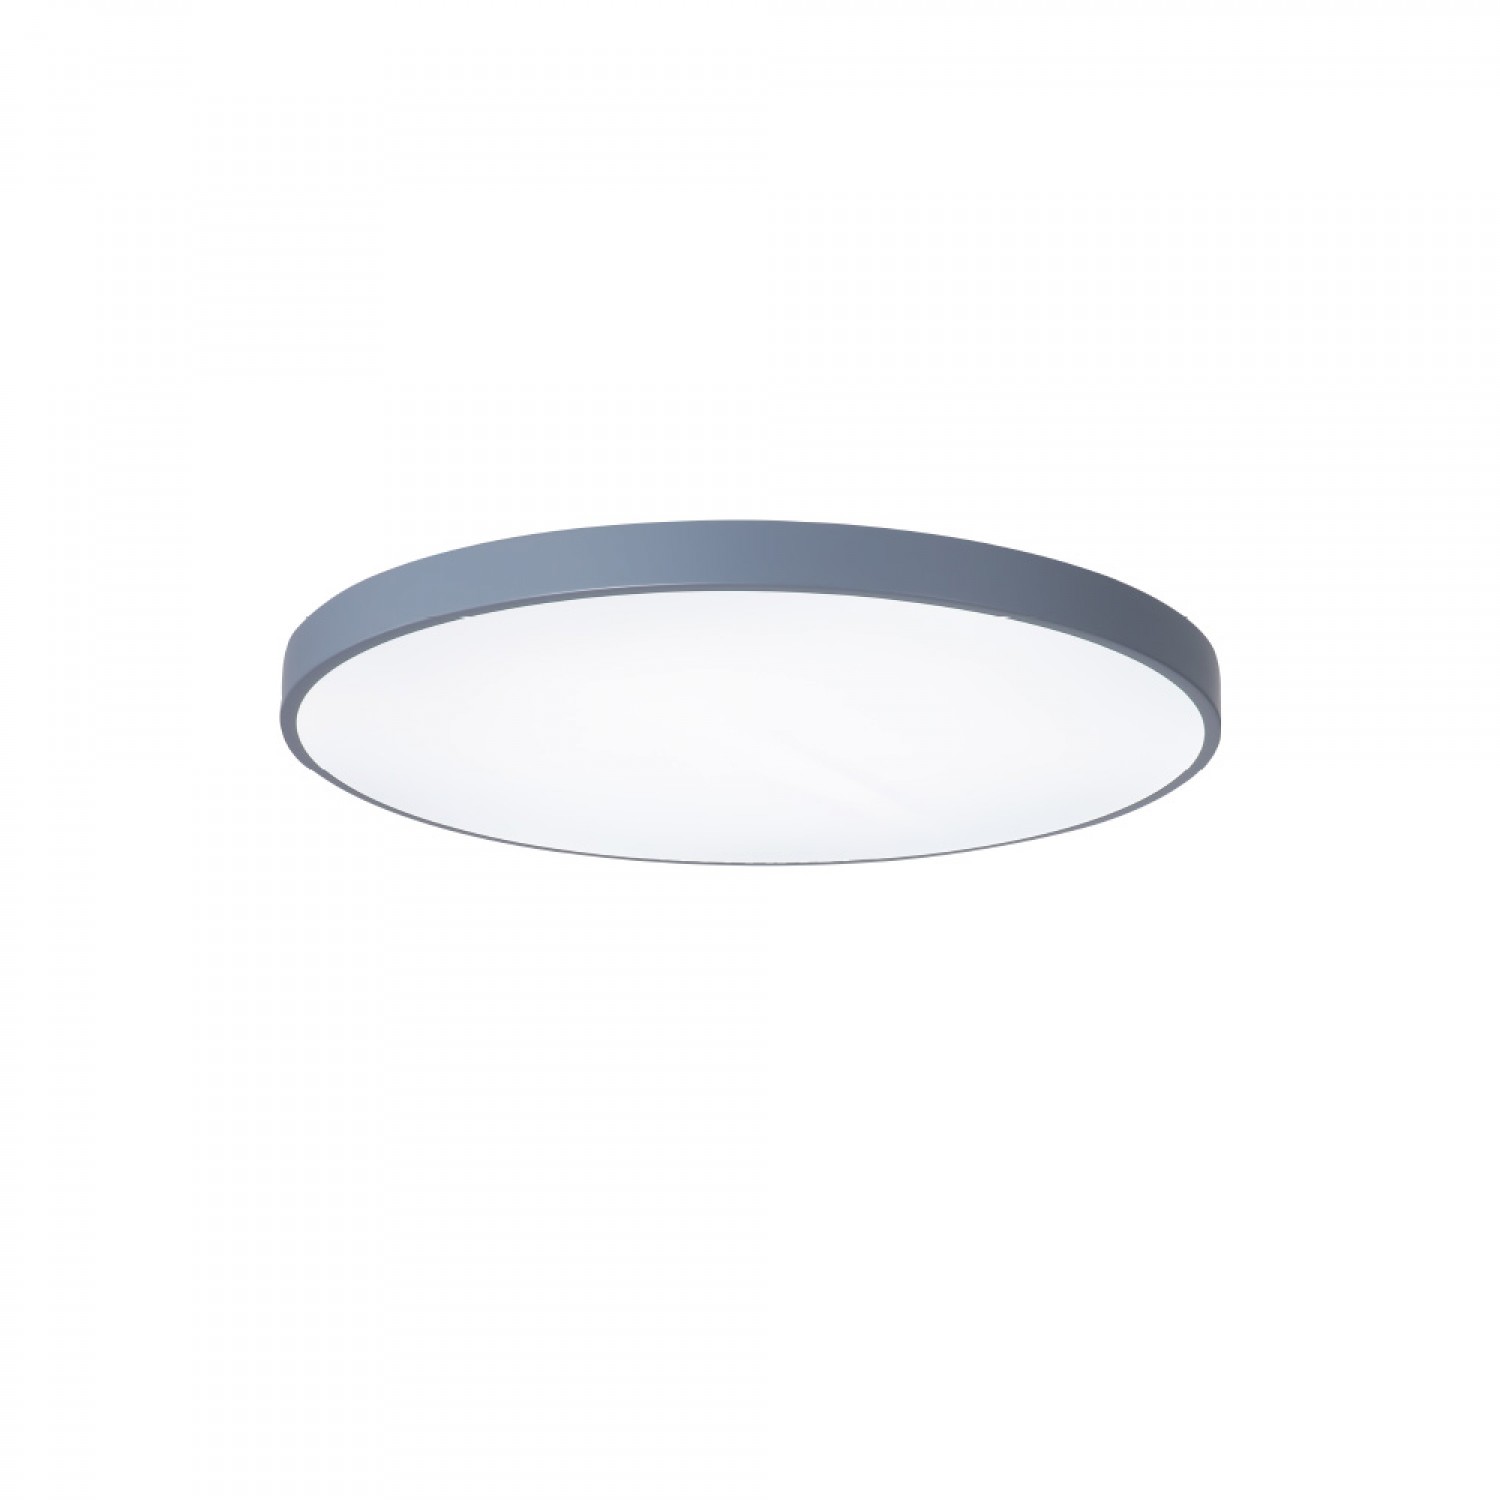 Πλαφονιέρα οροφής LED 150W 3CCT (by switch on base) από γκρί μέταλλο και ακρυλικό D:80cm (42035-A-Gray)